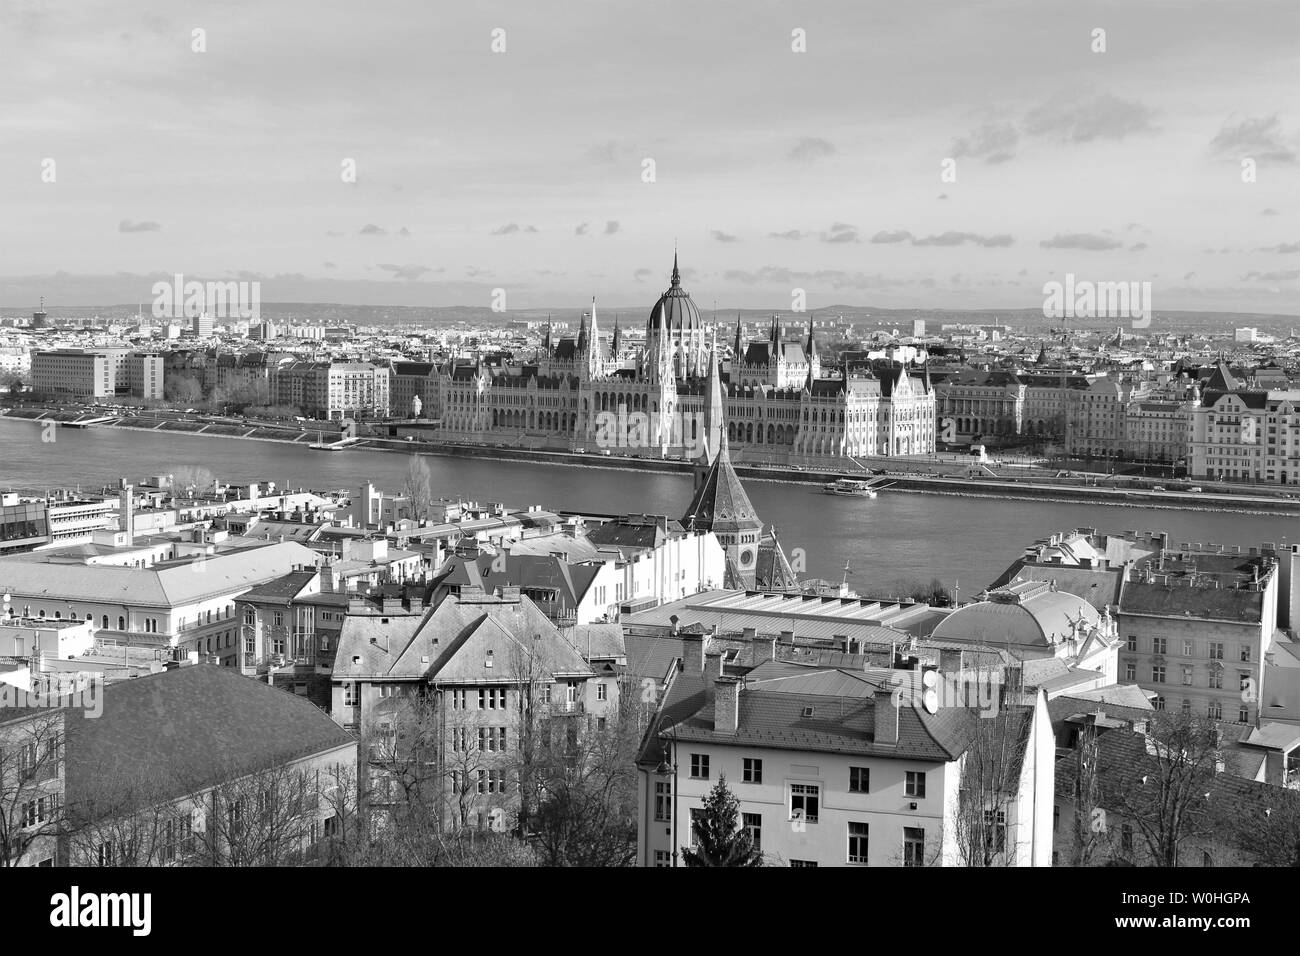 Une vue de la ville de Budapest qui est divisé par le Danube. Dans le centre est la chambre du parlement hongrois, qui est situé sur le côté Pest. Banque D'Images